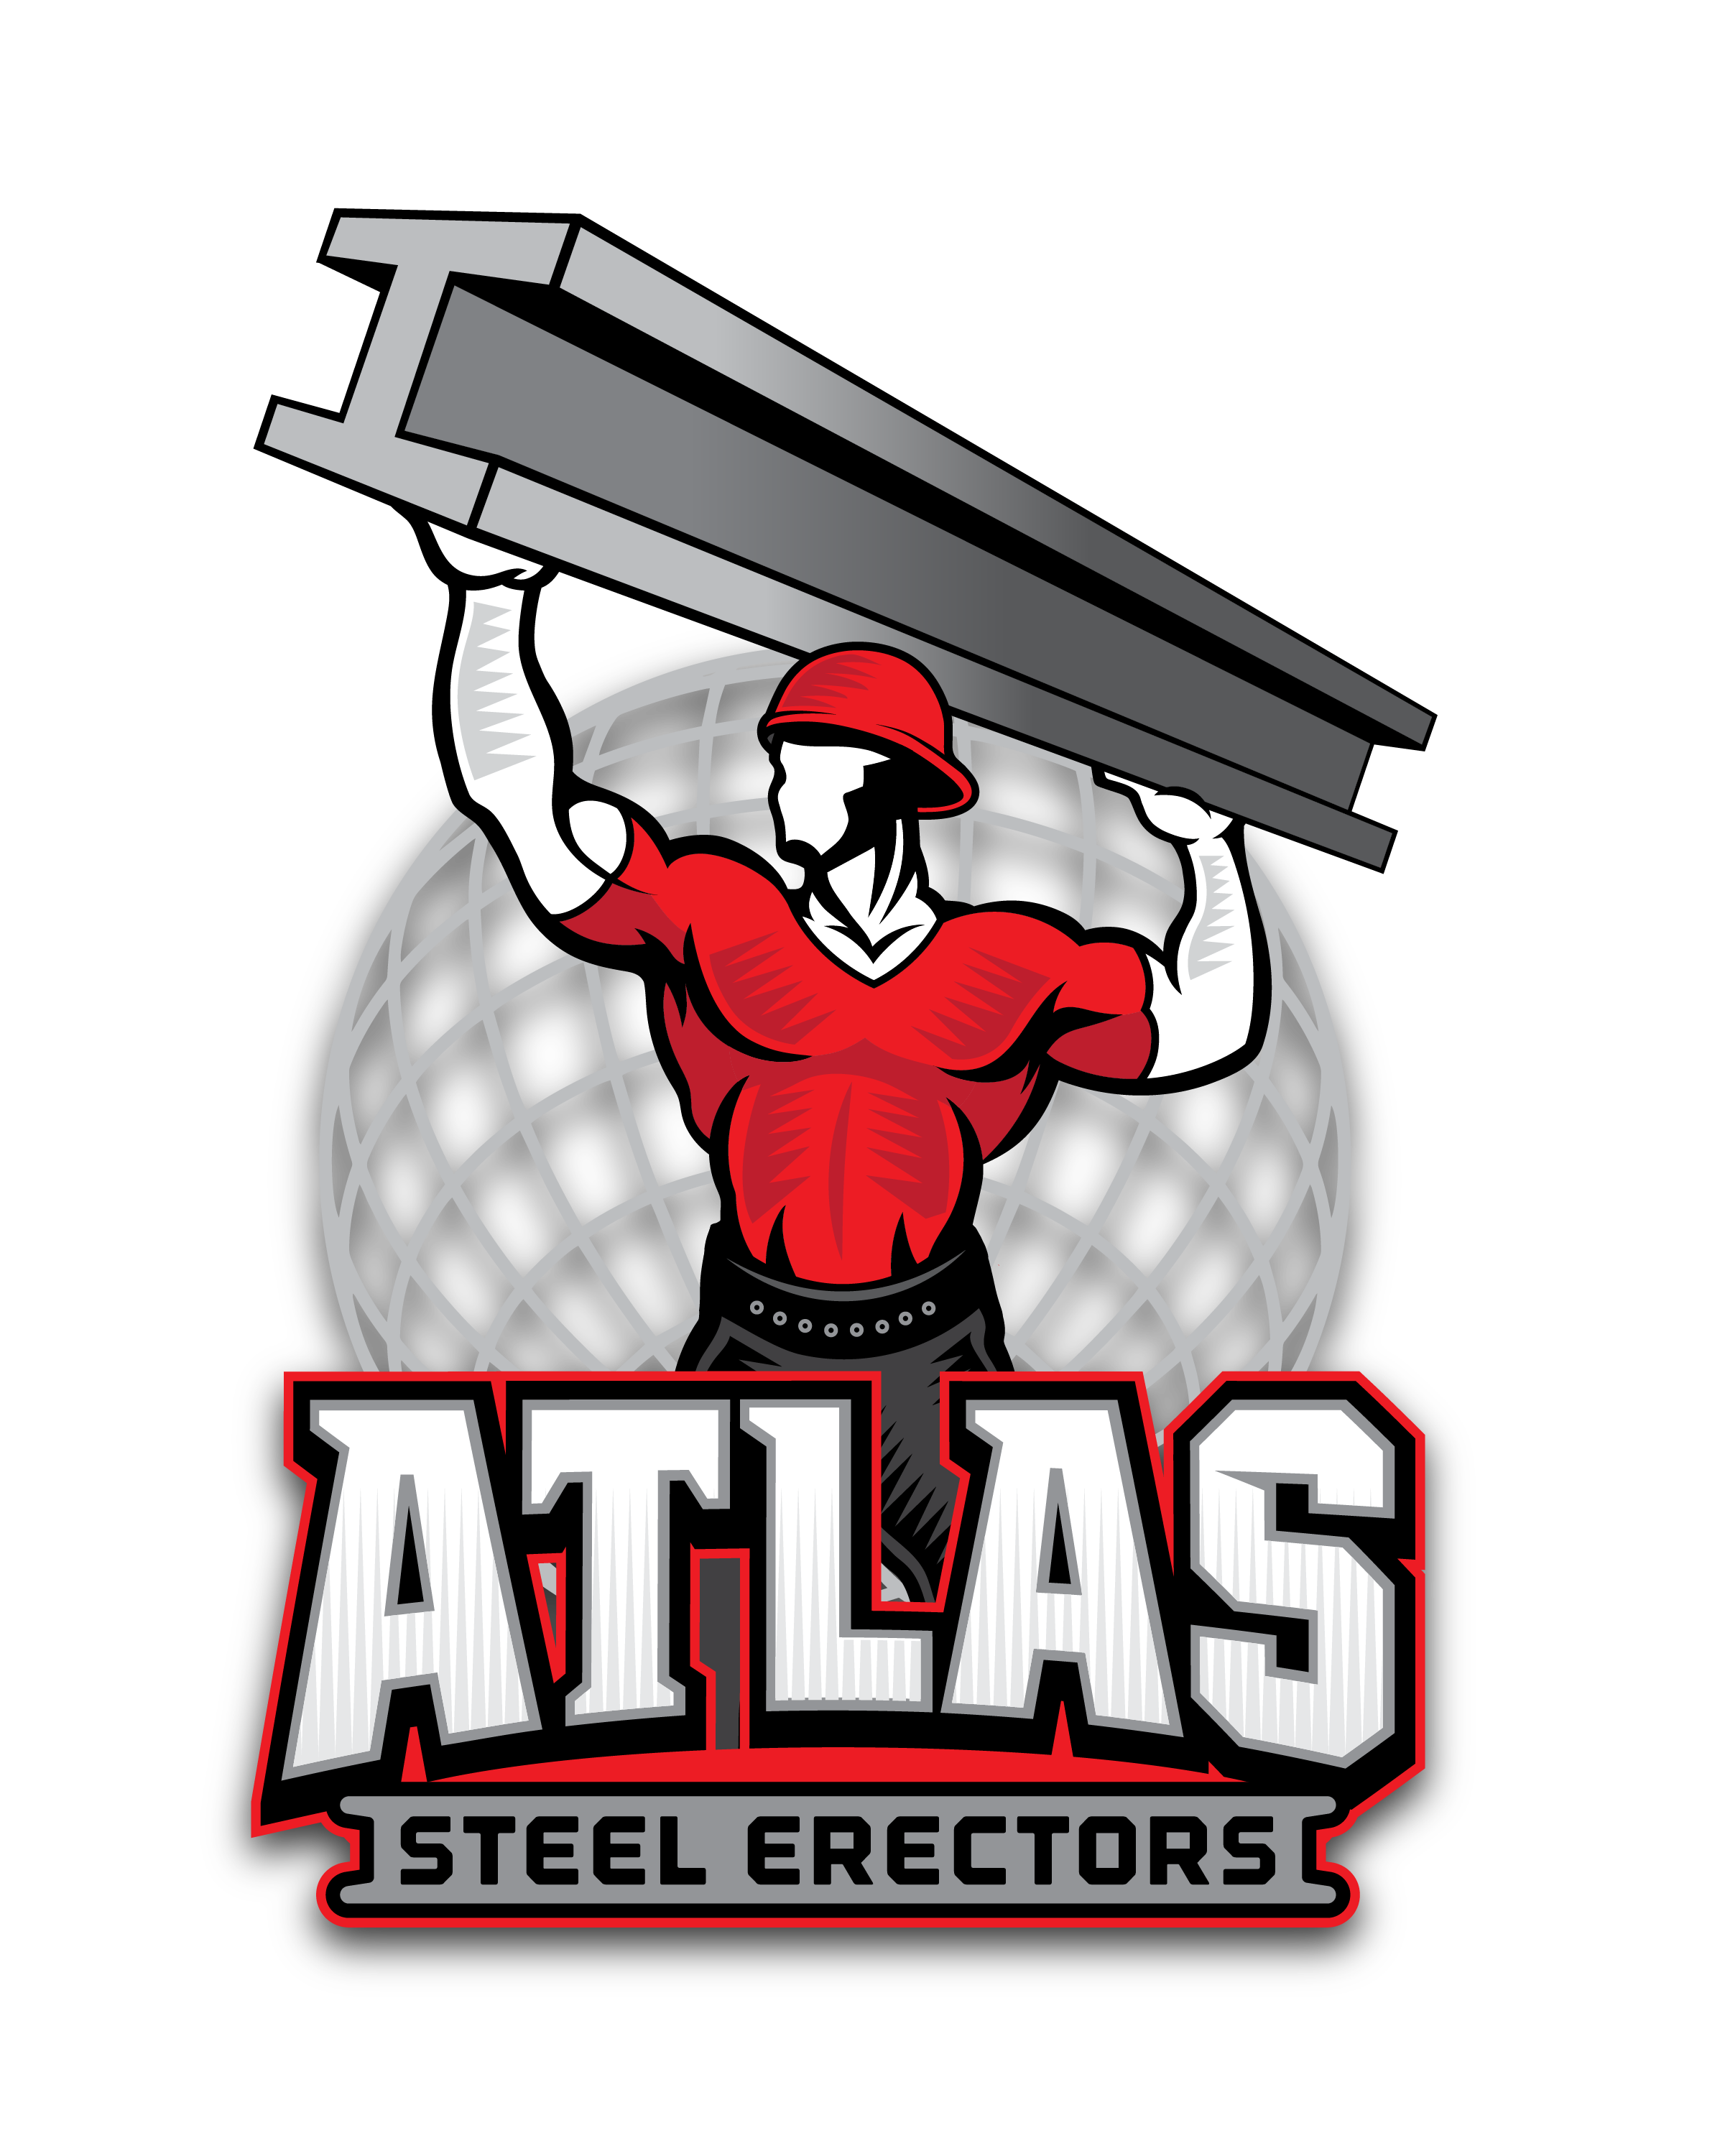 Atlas Steel Erectors